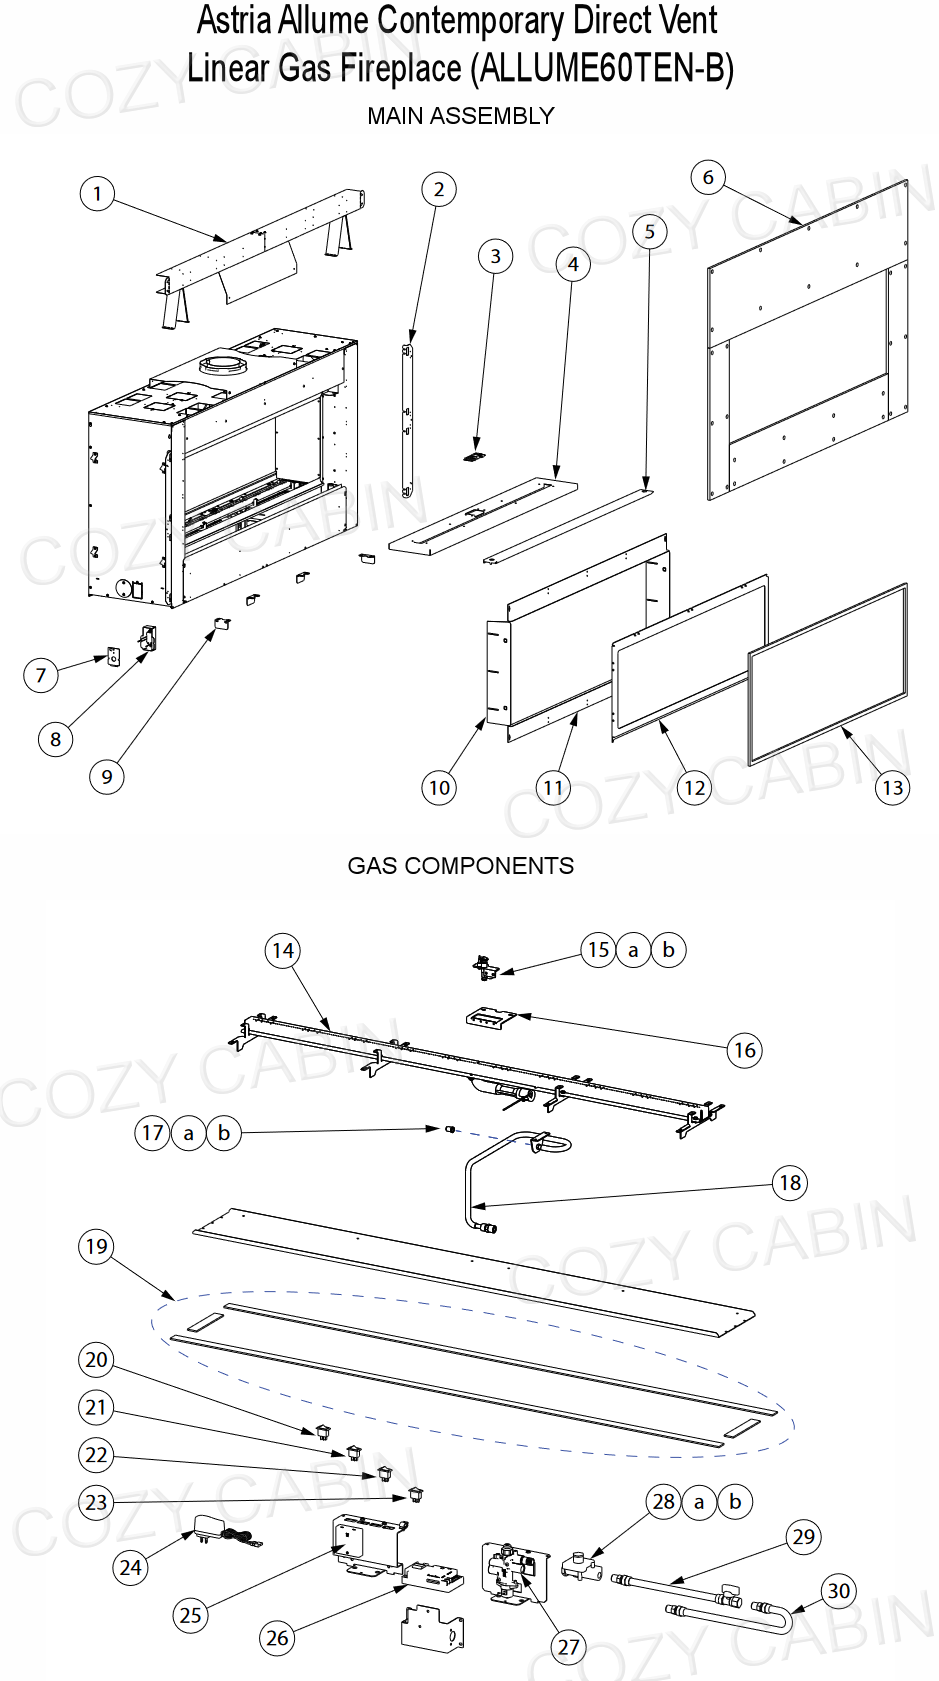 Astria Allume Contemporary Direct Vent Linear Gas Fireplace (ALLUME60TEN-B) #ALLUME60TEN-B